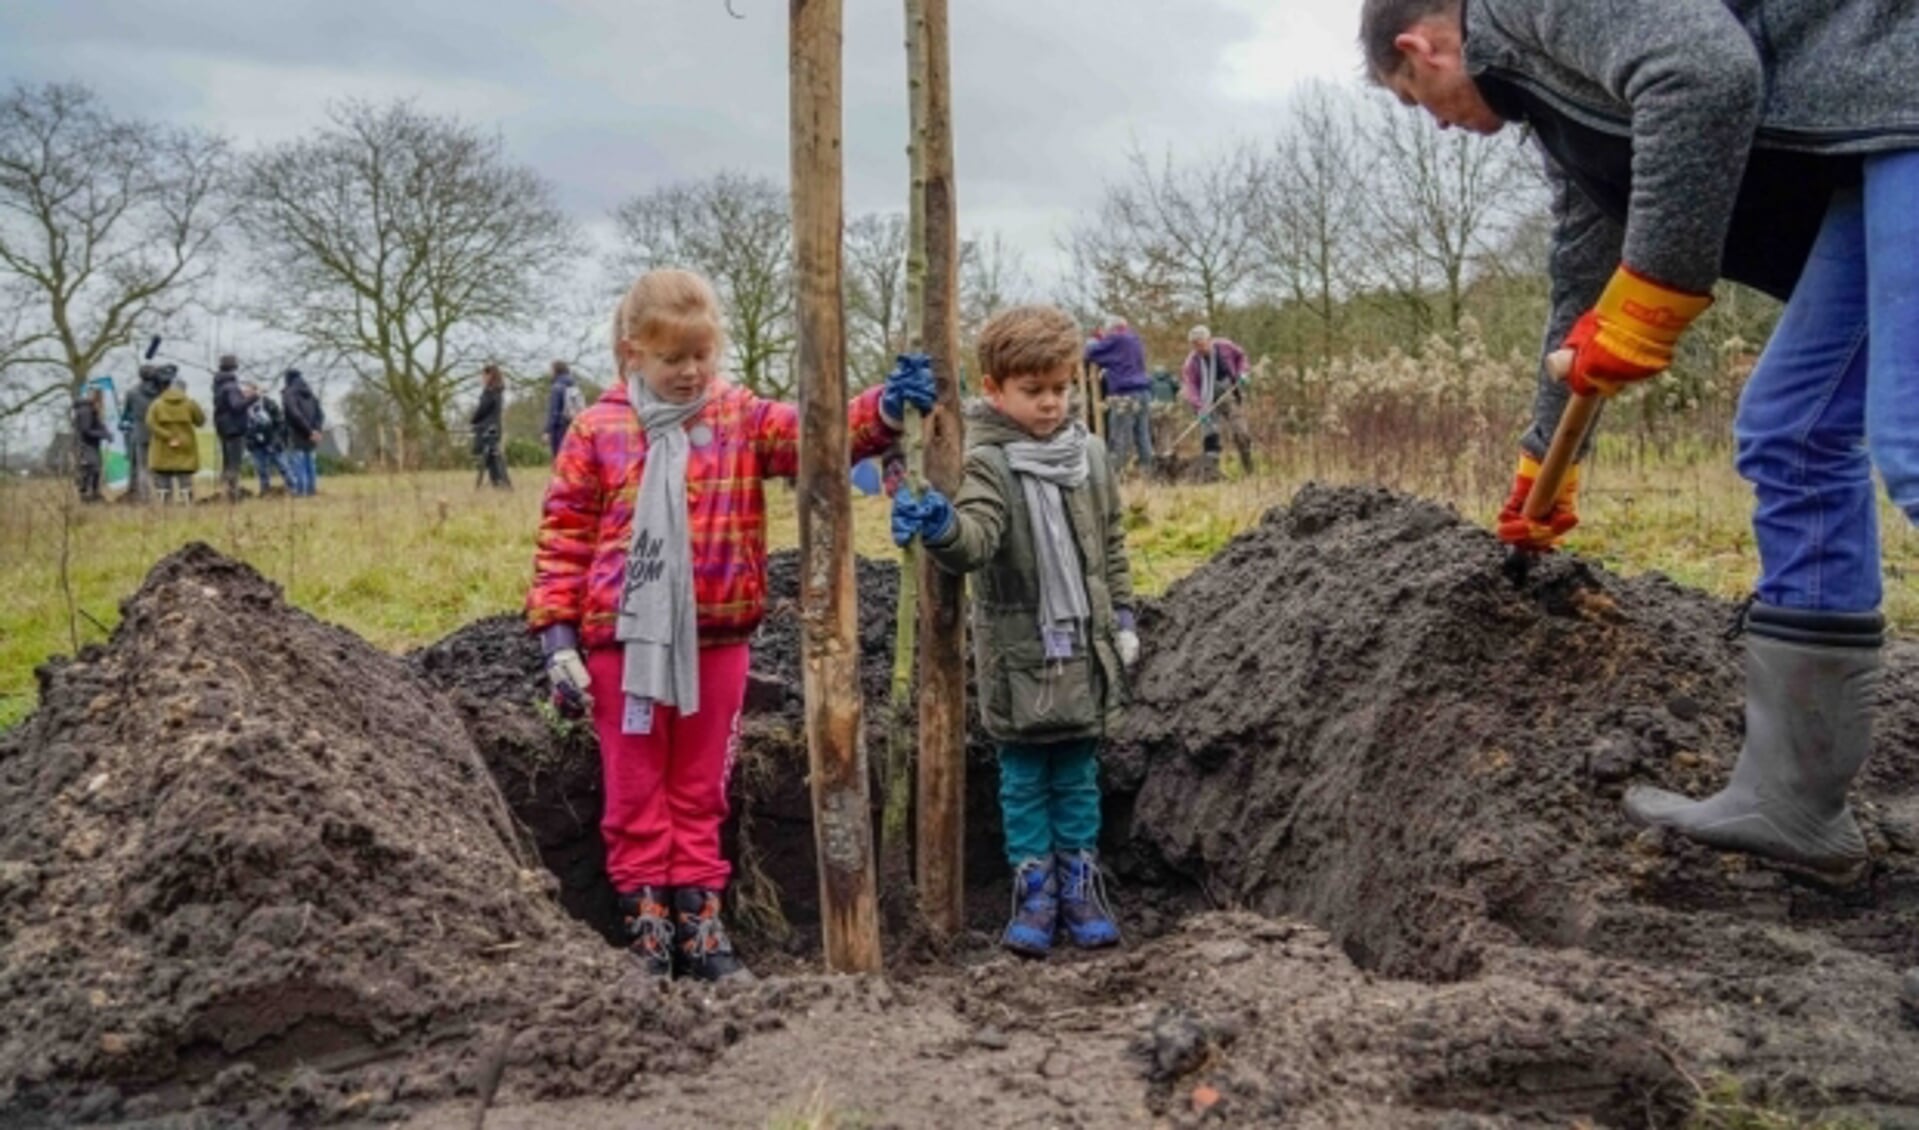 Plan Boom Utrecht deelt met steun van provincie Utrecht 10.000 gratis boompjes uit aan inwoners. Foto: Plan Boom, Jack Tillmanns